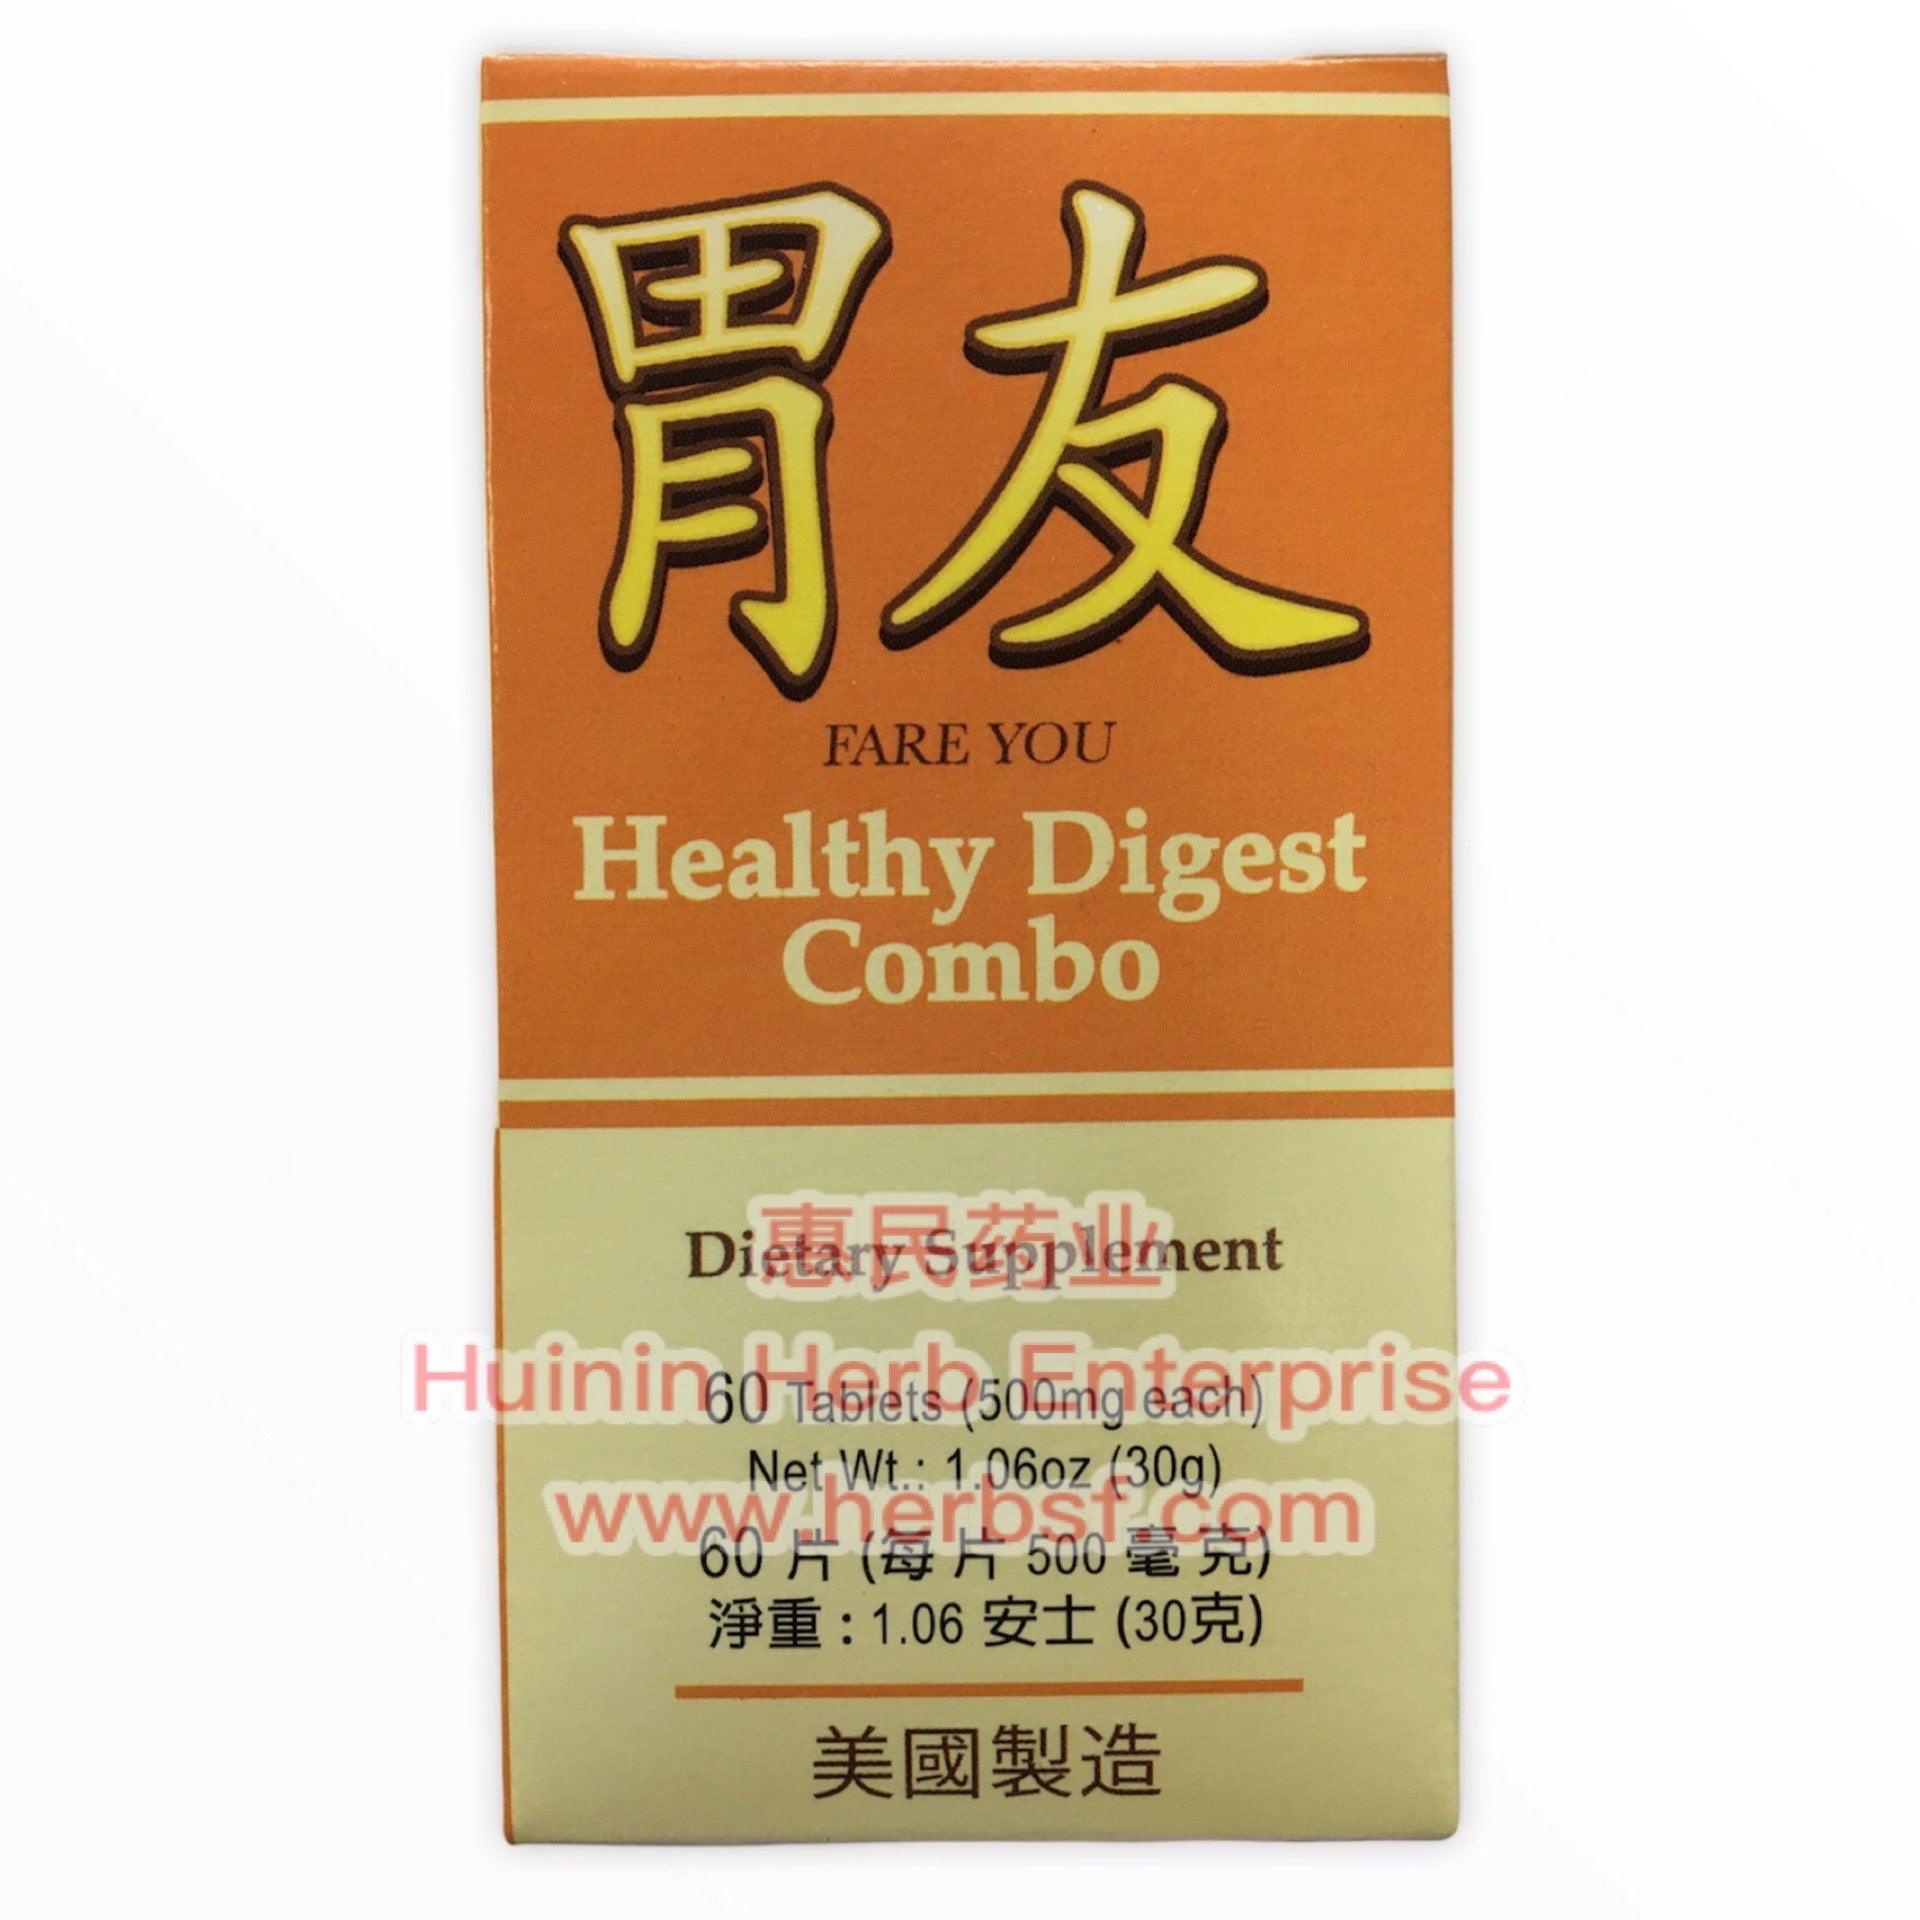 Wei You - Huimin Herb Online, LLC